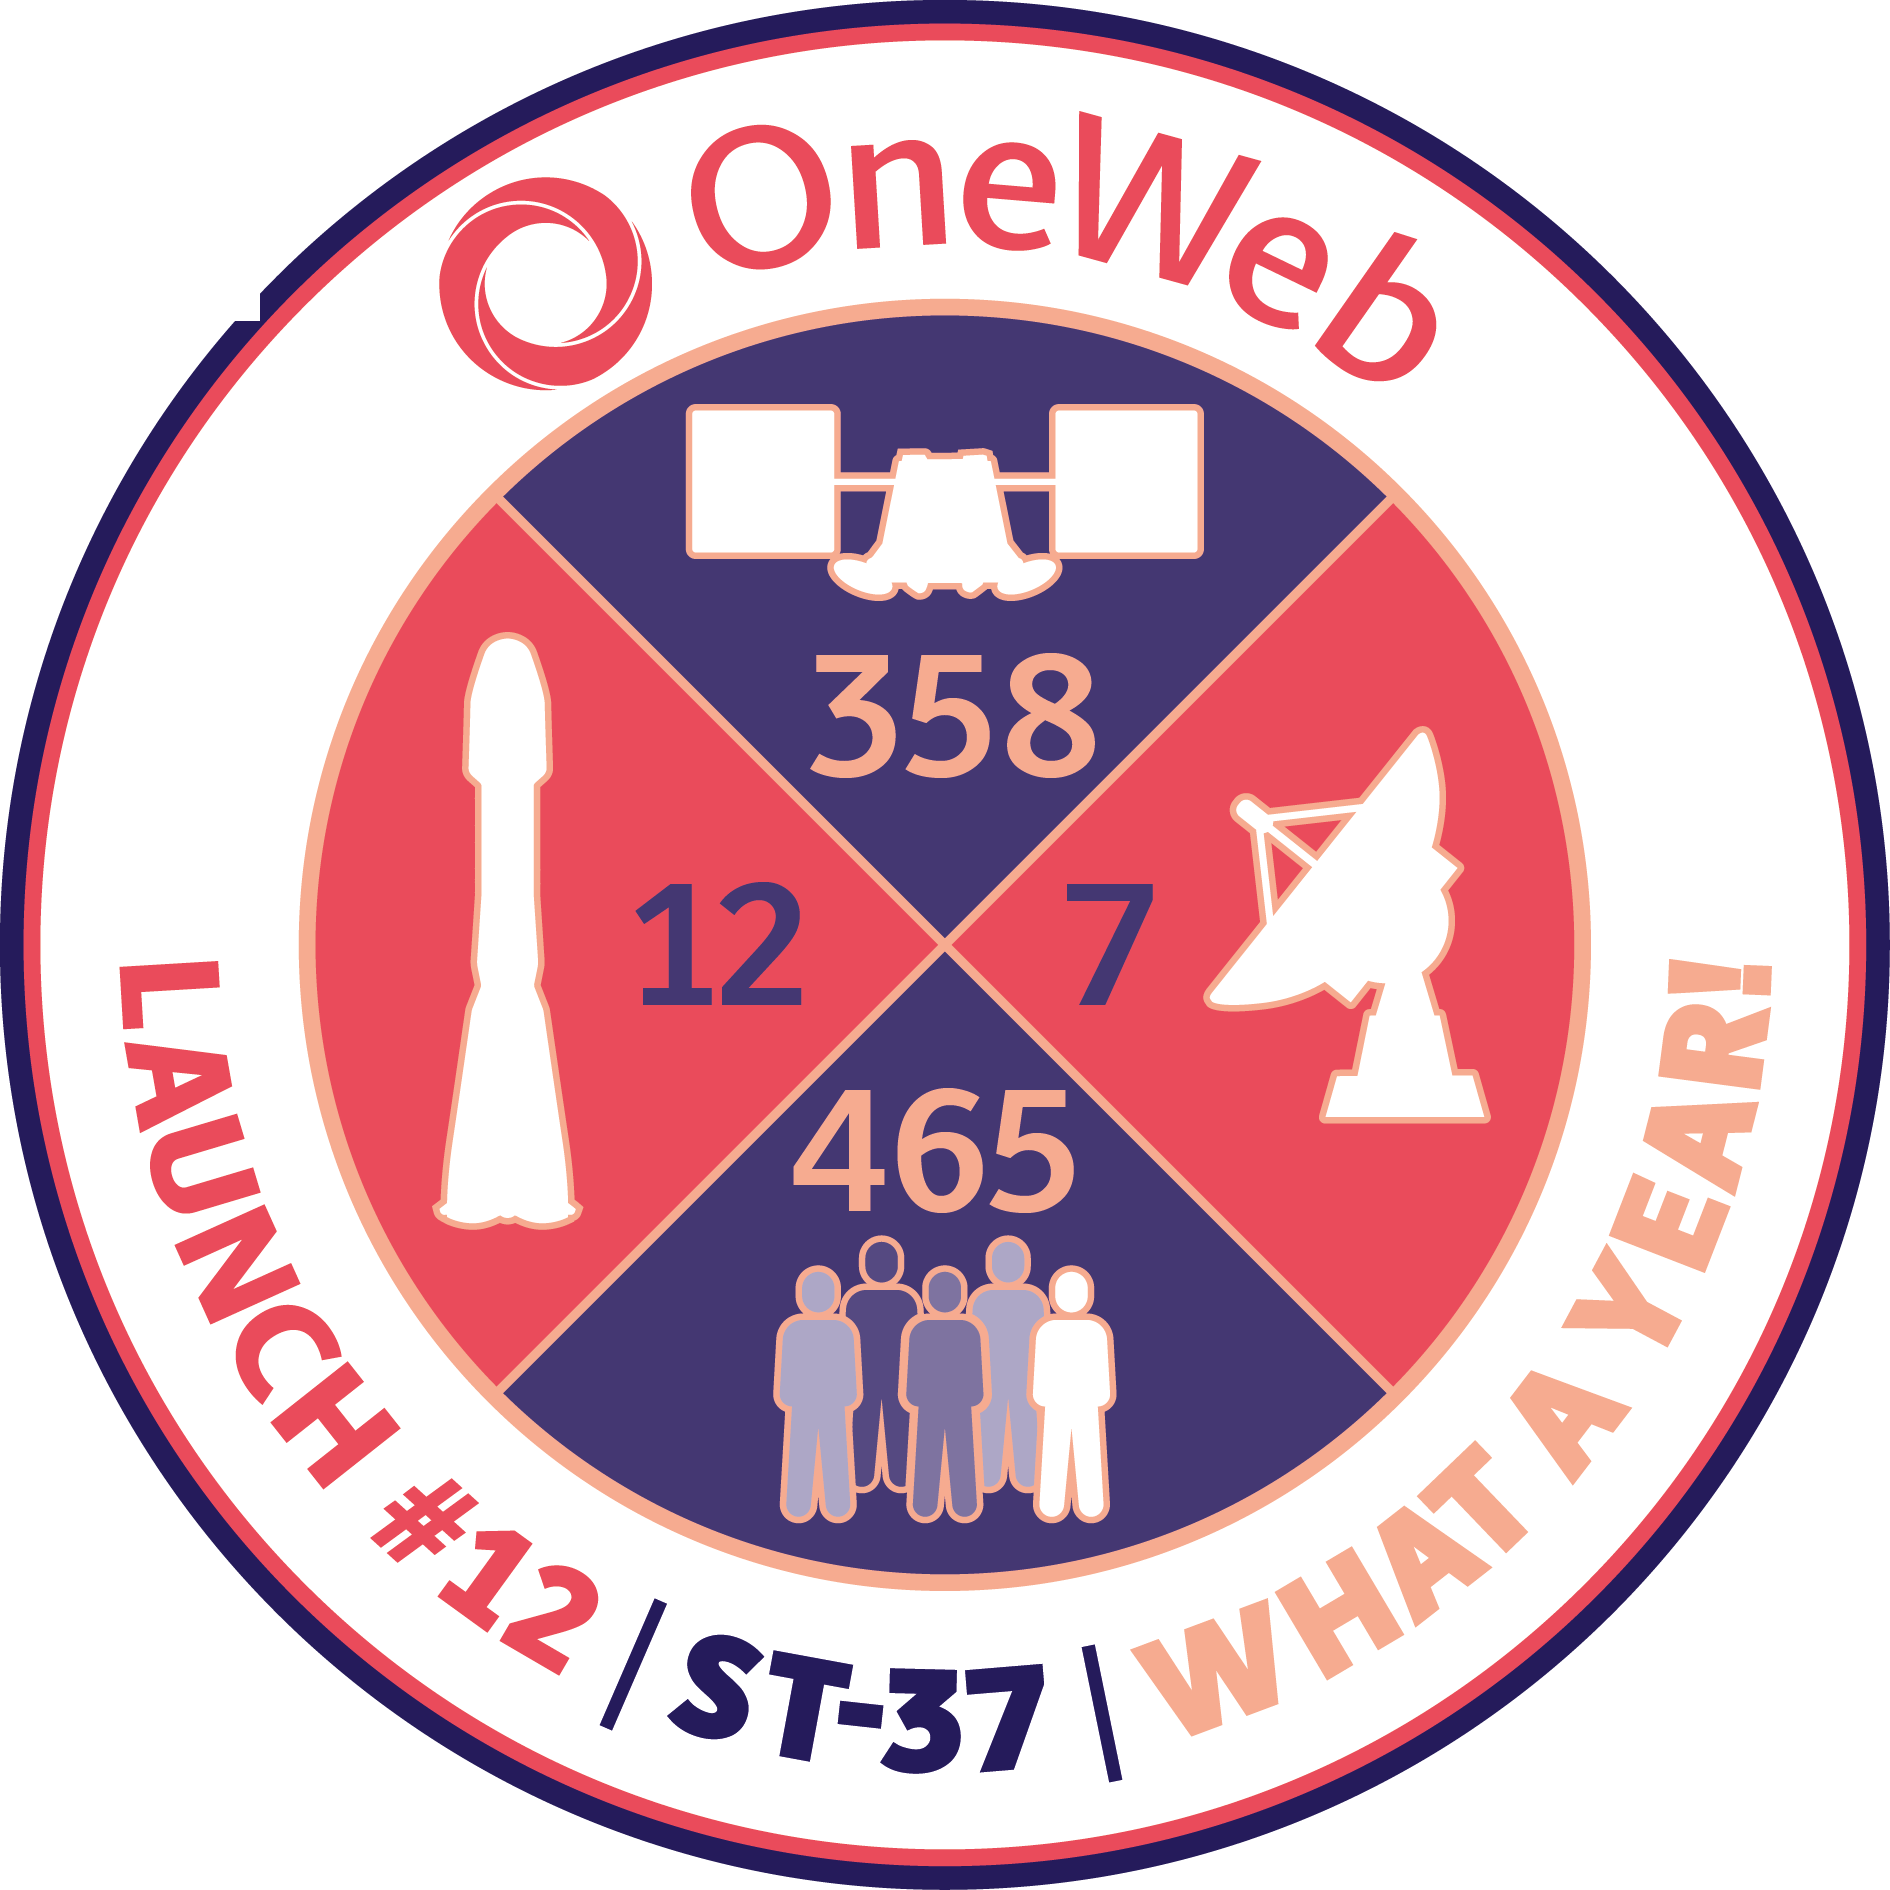 OneWeb 12